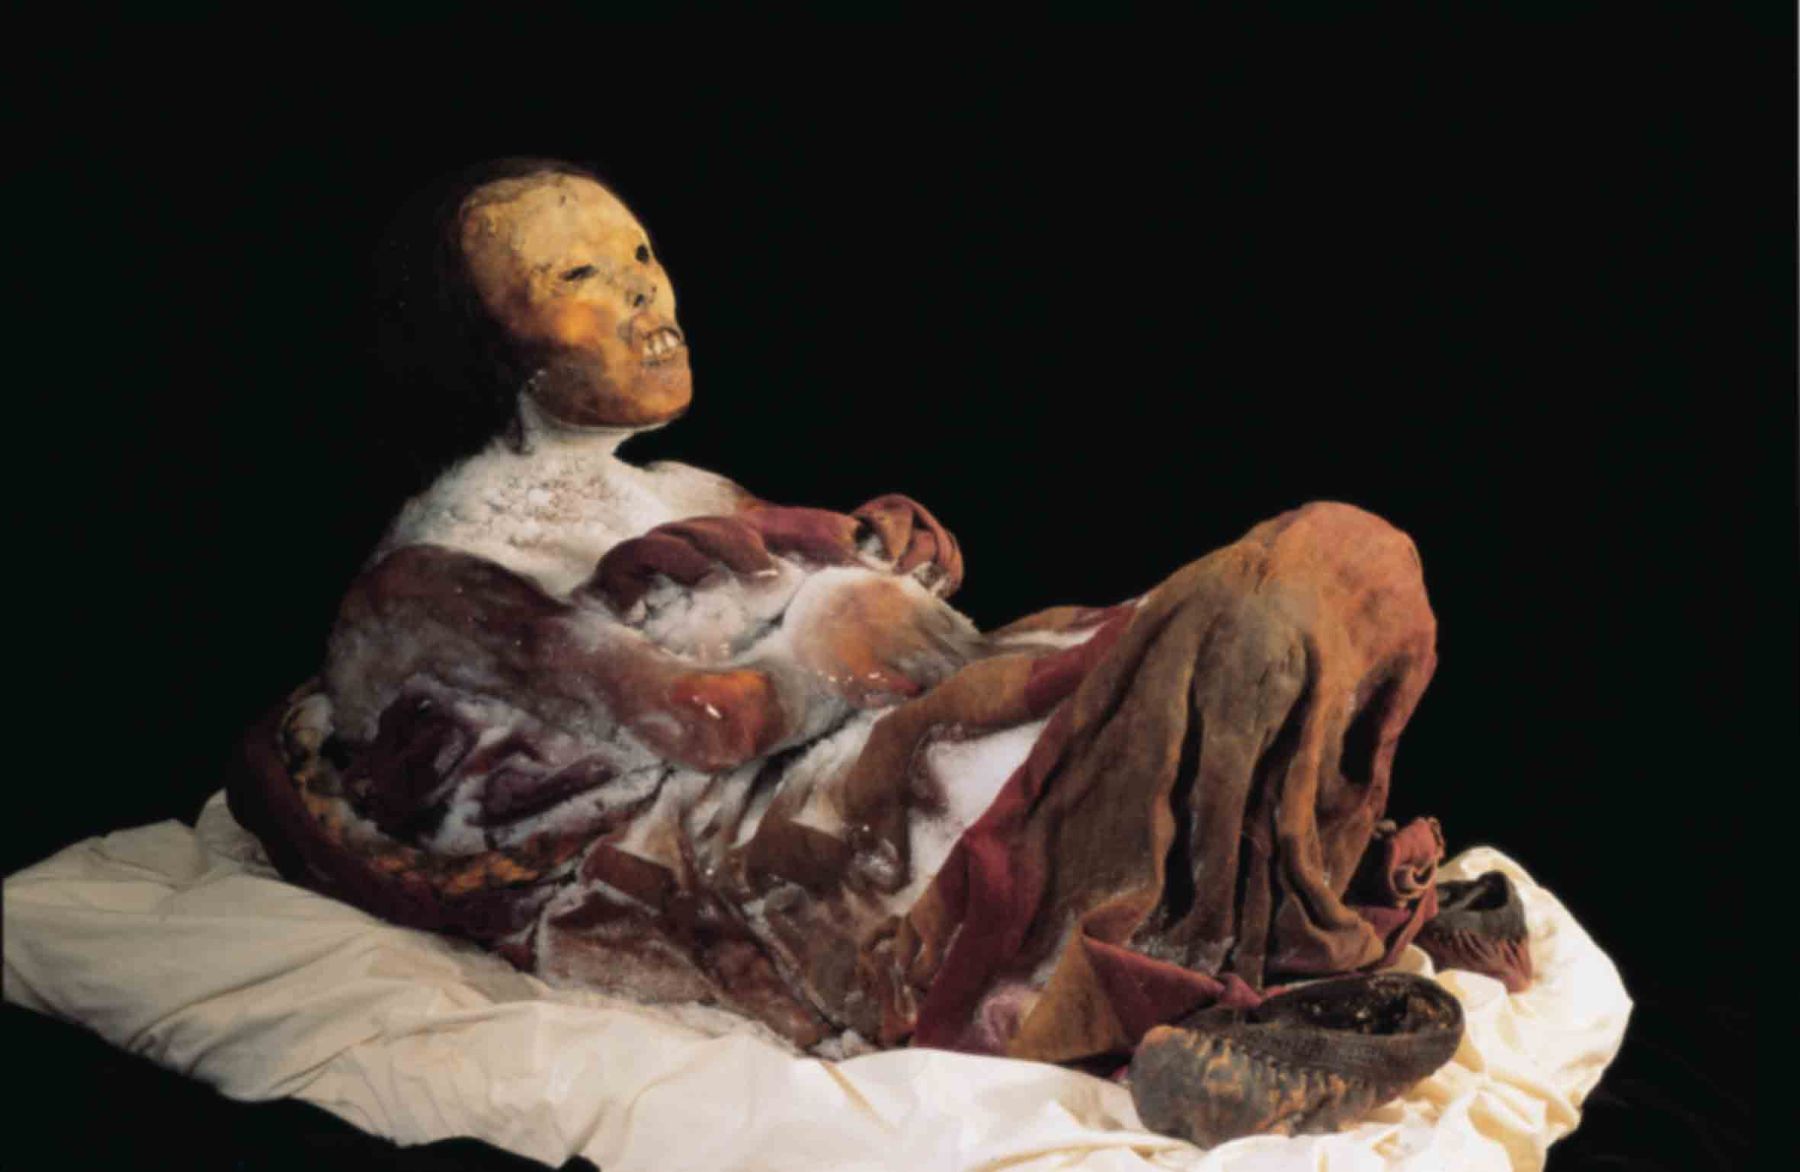 La momia "Juanita" se exhibe en el Museo Santuarios Andinos de Arequipa. Foto archivo